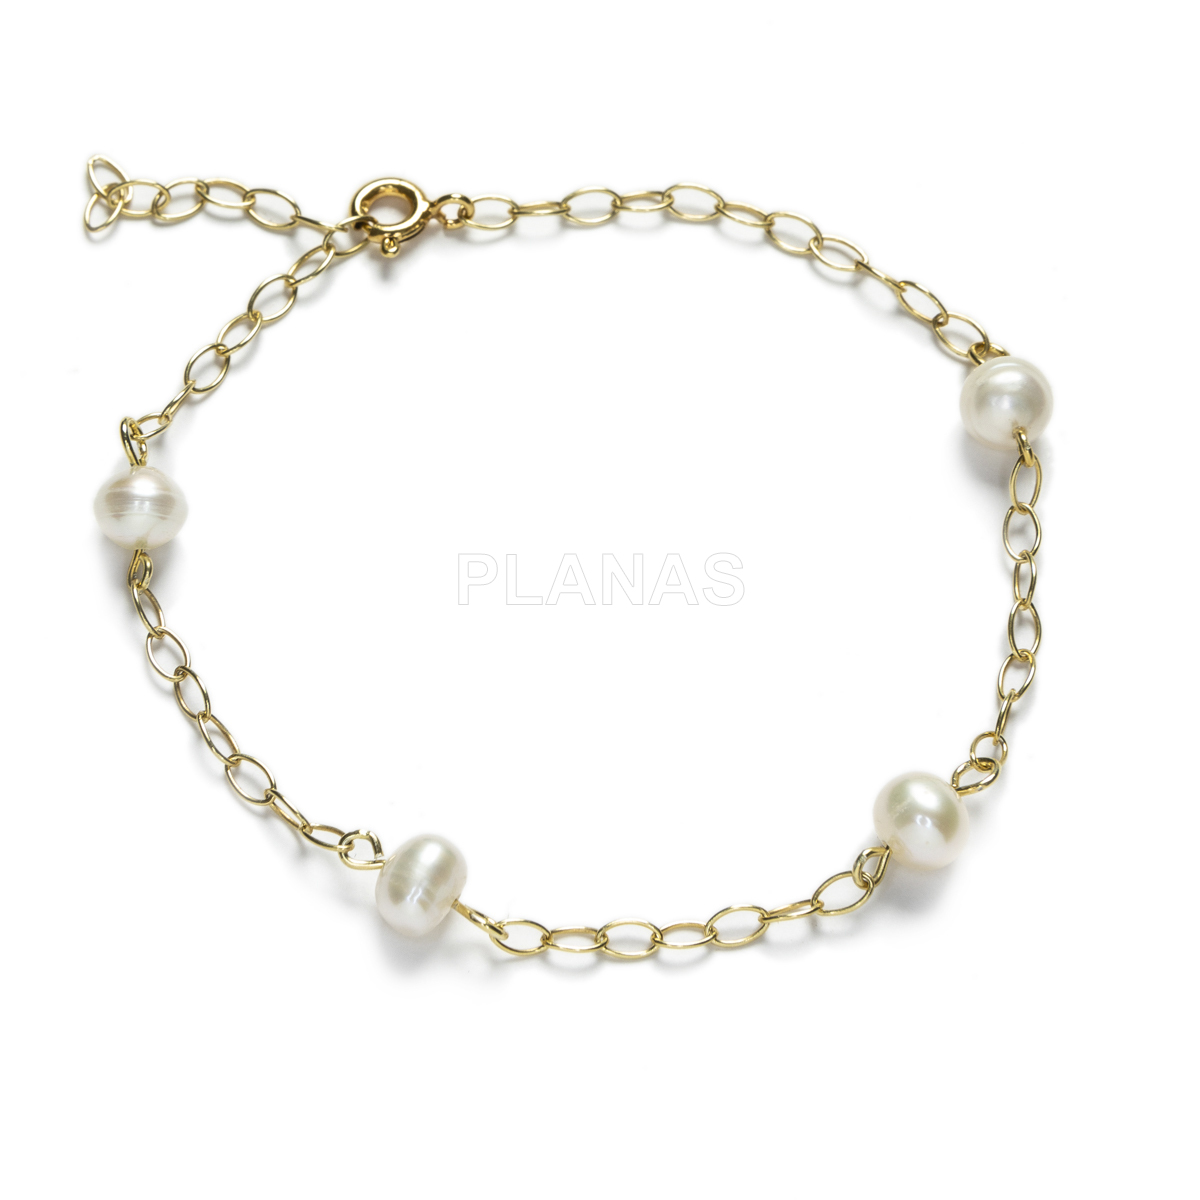 Conjunto de Collar y pulsera ajustables en Plata de ley y Baño Oro con Perlas Cultivadas.  